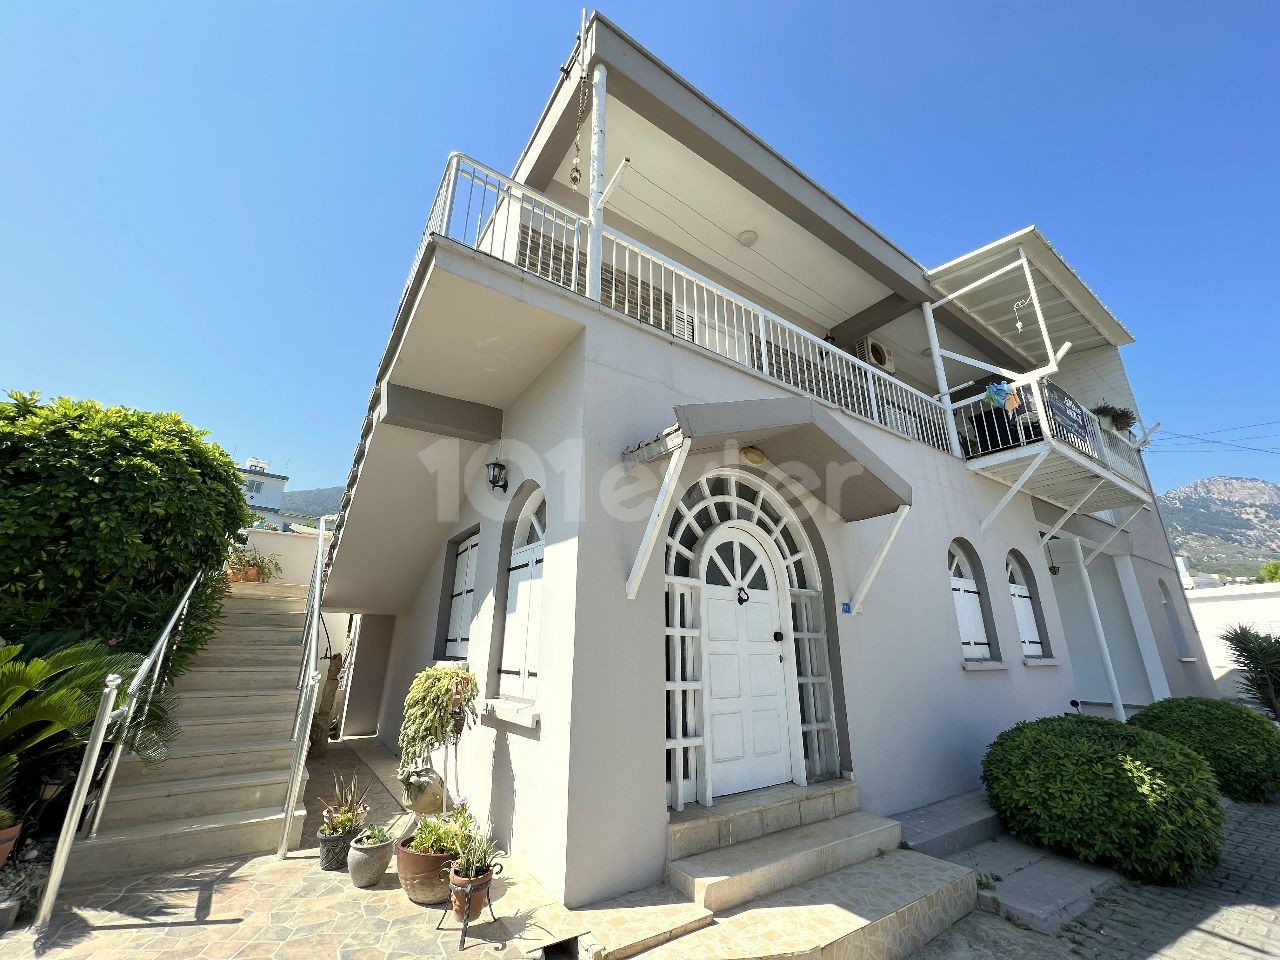 4 Wohnungen in Kyrenia Laptada auf dem Grundstück von 1200m2 befindet sich zum Verkauf. 05338403555 ** 